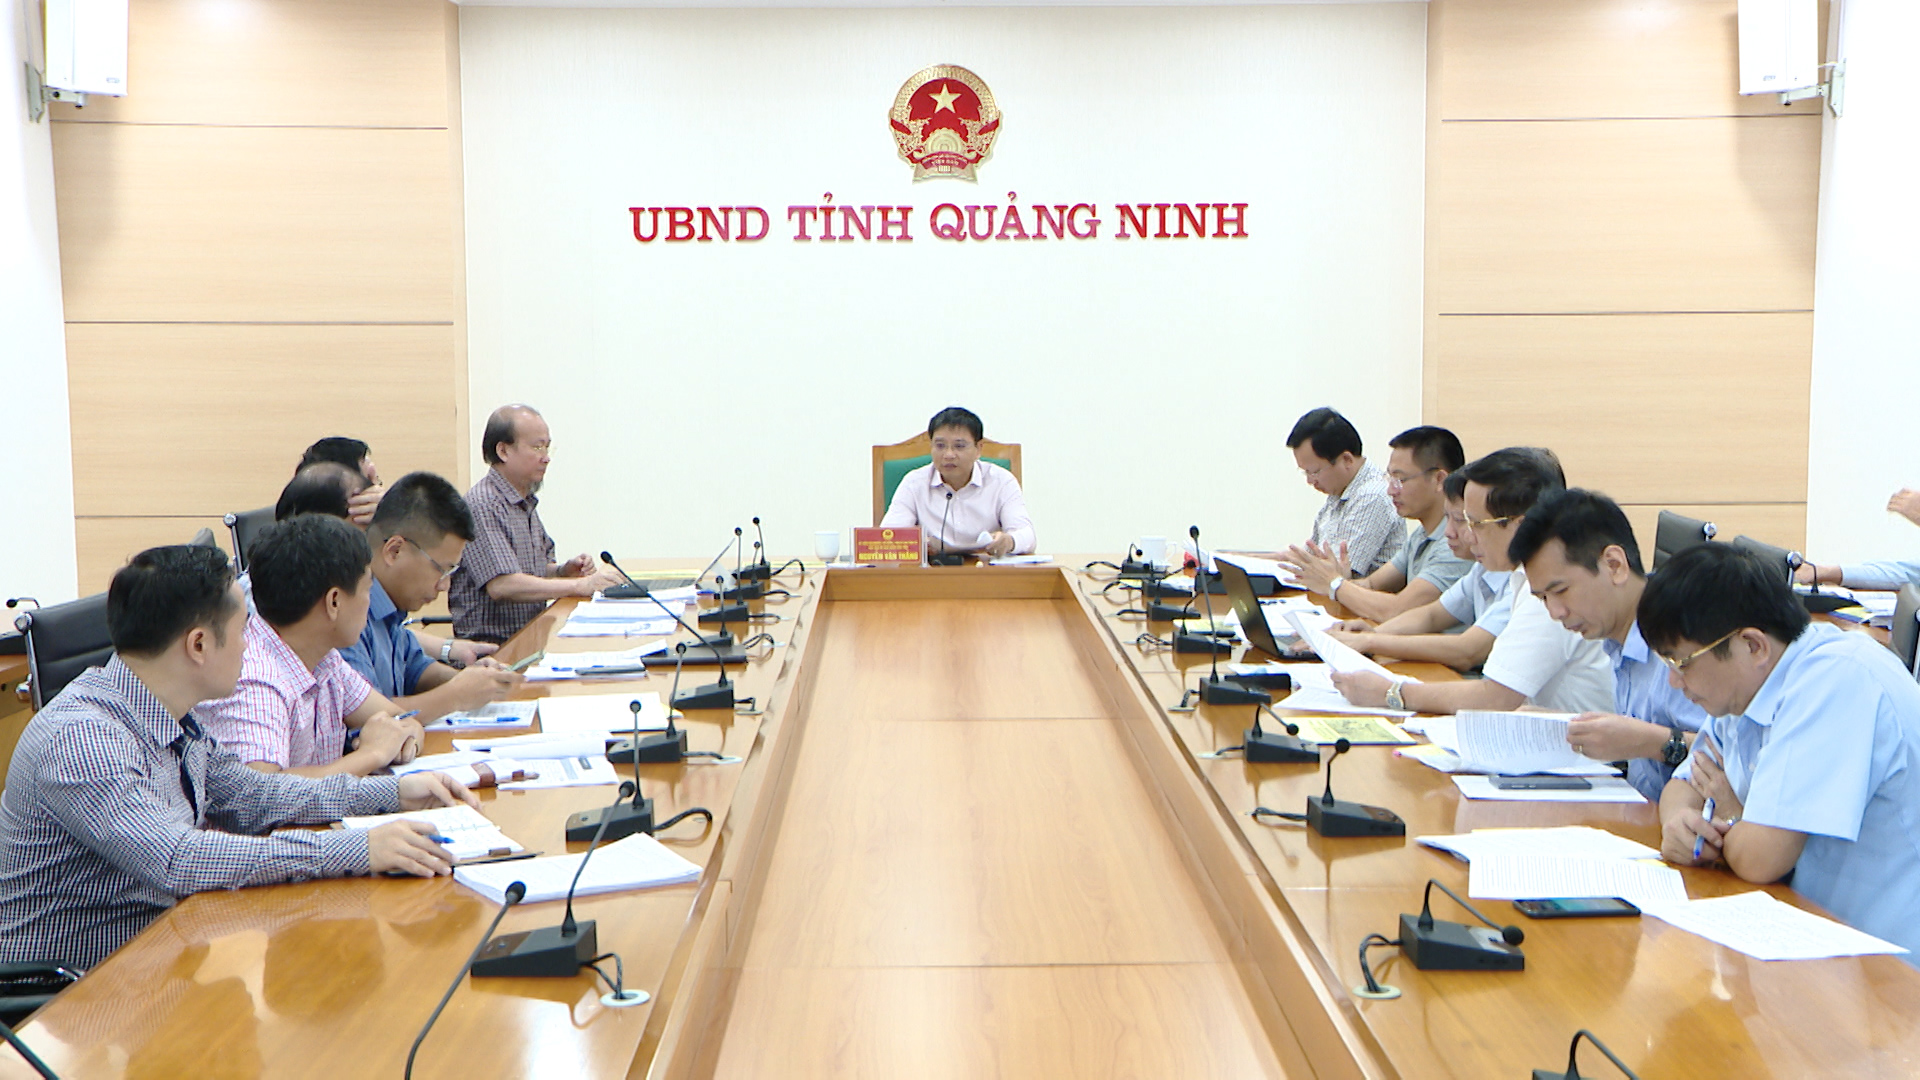 Đồng chí Nguyễn Văn Thắng, Chủ tịch UBND tỉnh kết luận cuộc họp